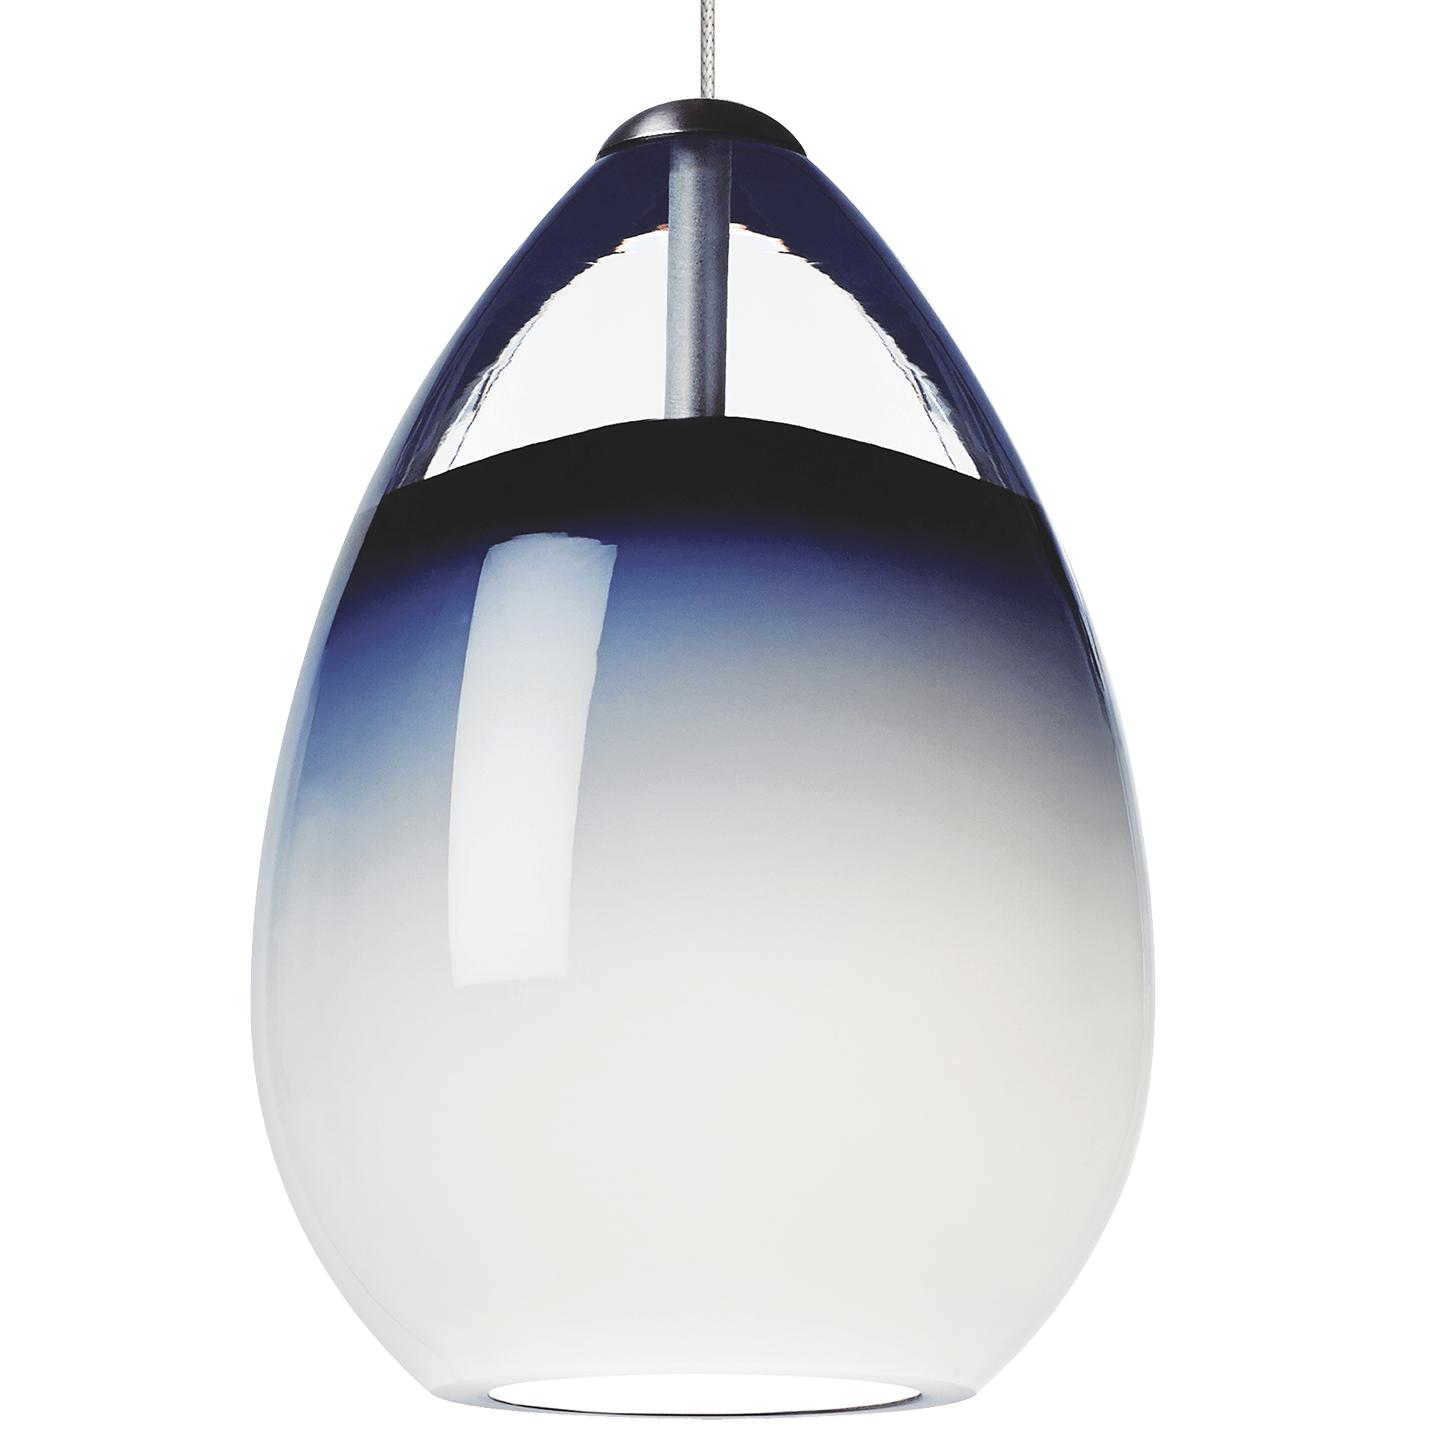 Купить Подвесной светильник Alina Pendant в интернет-магазине roooms.ru